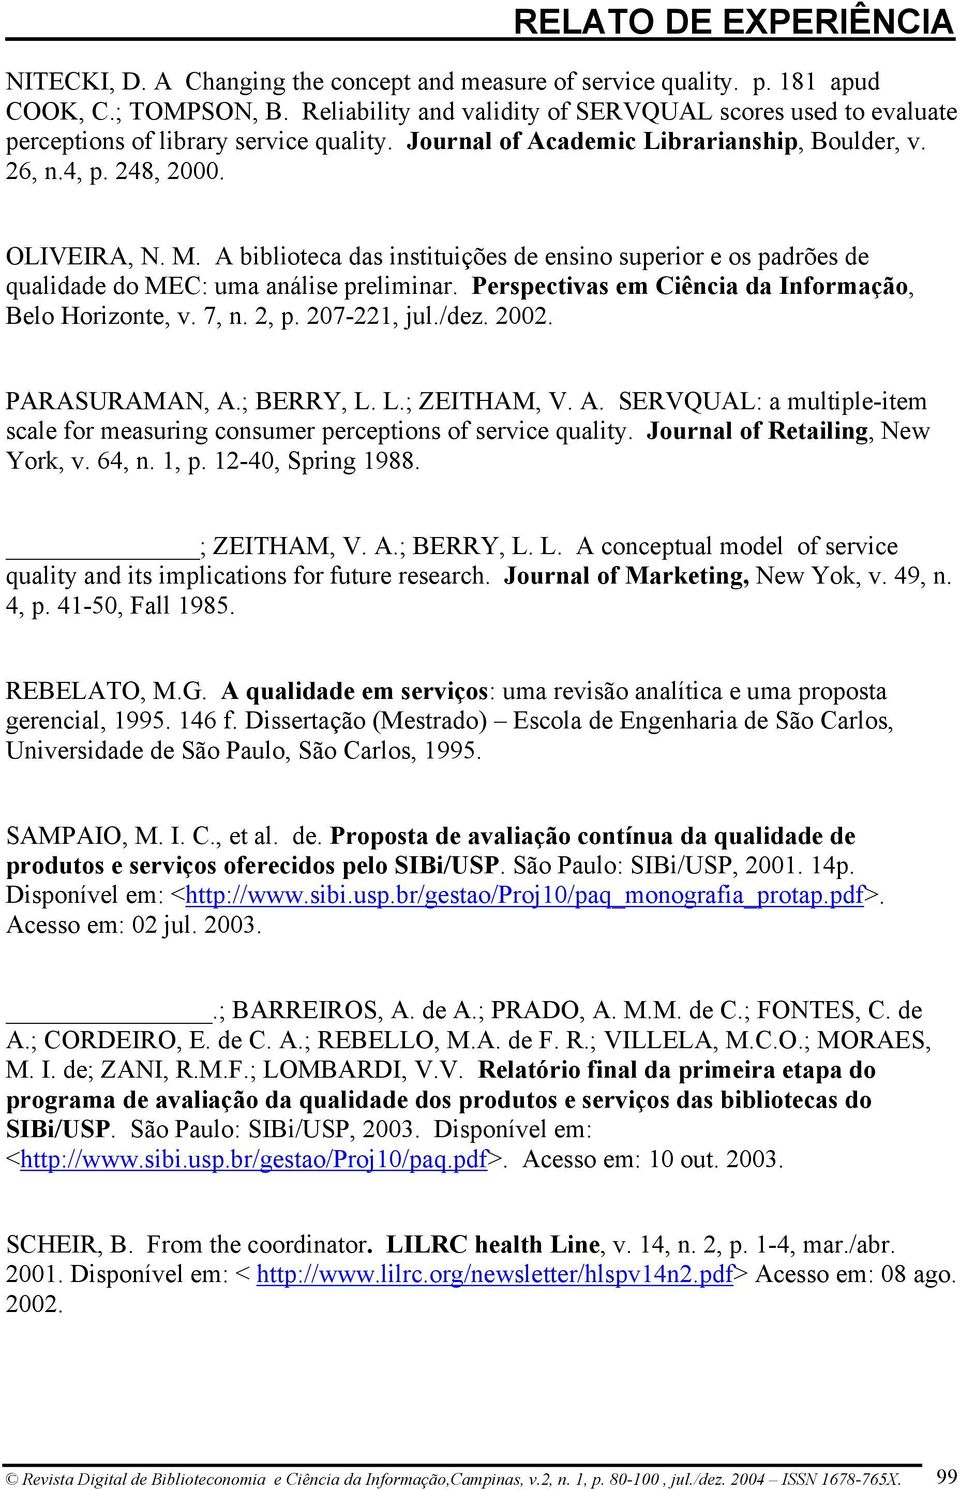 A biblioteca das instituições de ensino superior e os padrões de qualidade do MEC: uma análise preliminar. Perspectivas em Ciência da Informação, Belo Horizonte, v. 7, n. 2, p. 207-221, jul./dez.